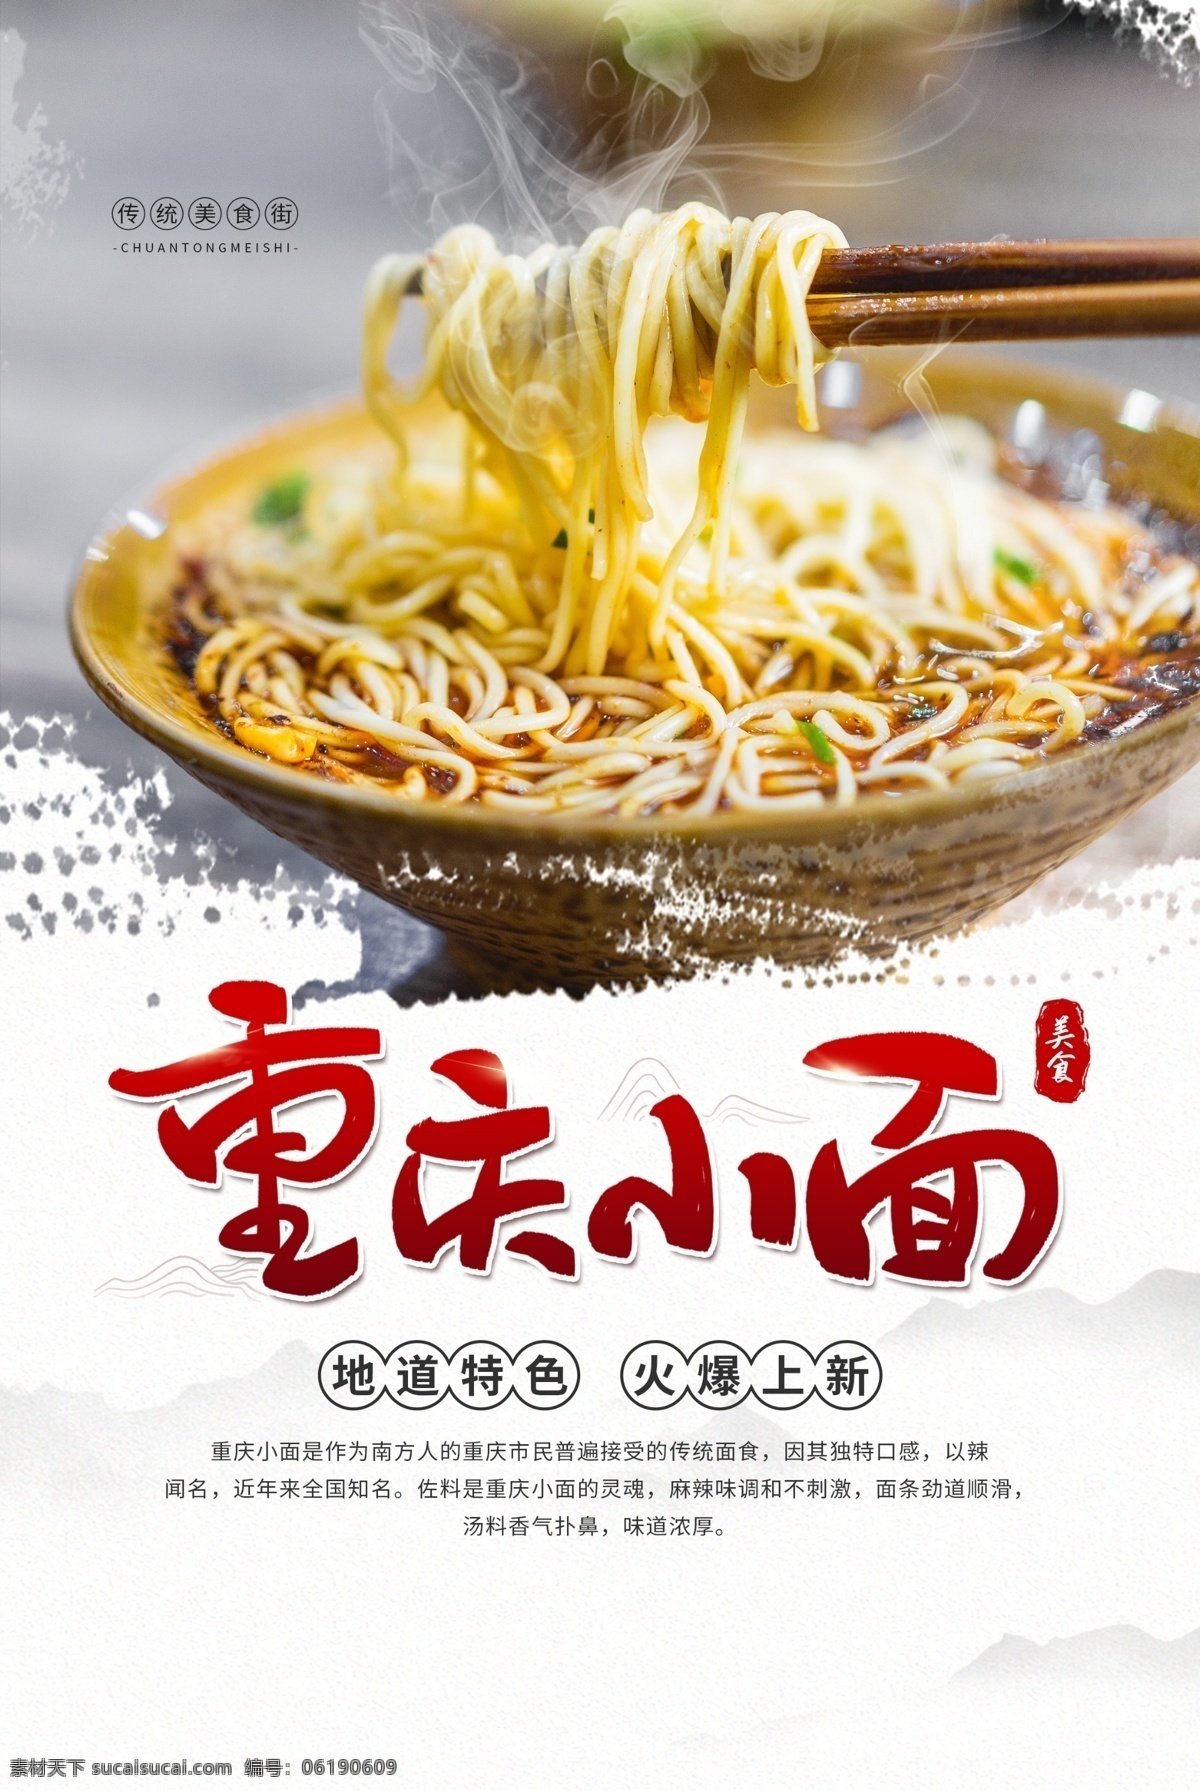 重庆 小 美食 食 材 活动 促销 海报 重庆小面 食材 餐饮美食 类